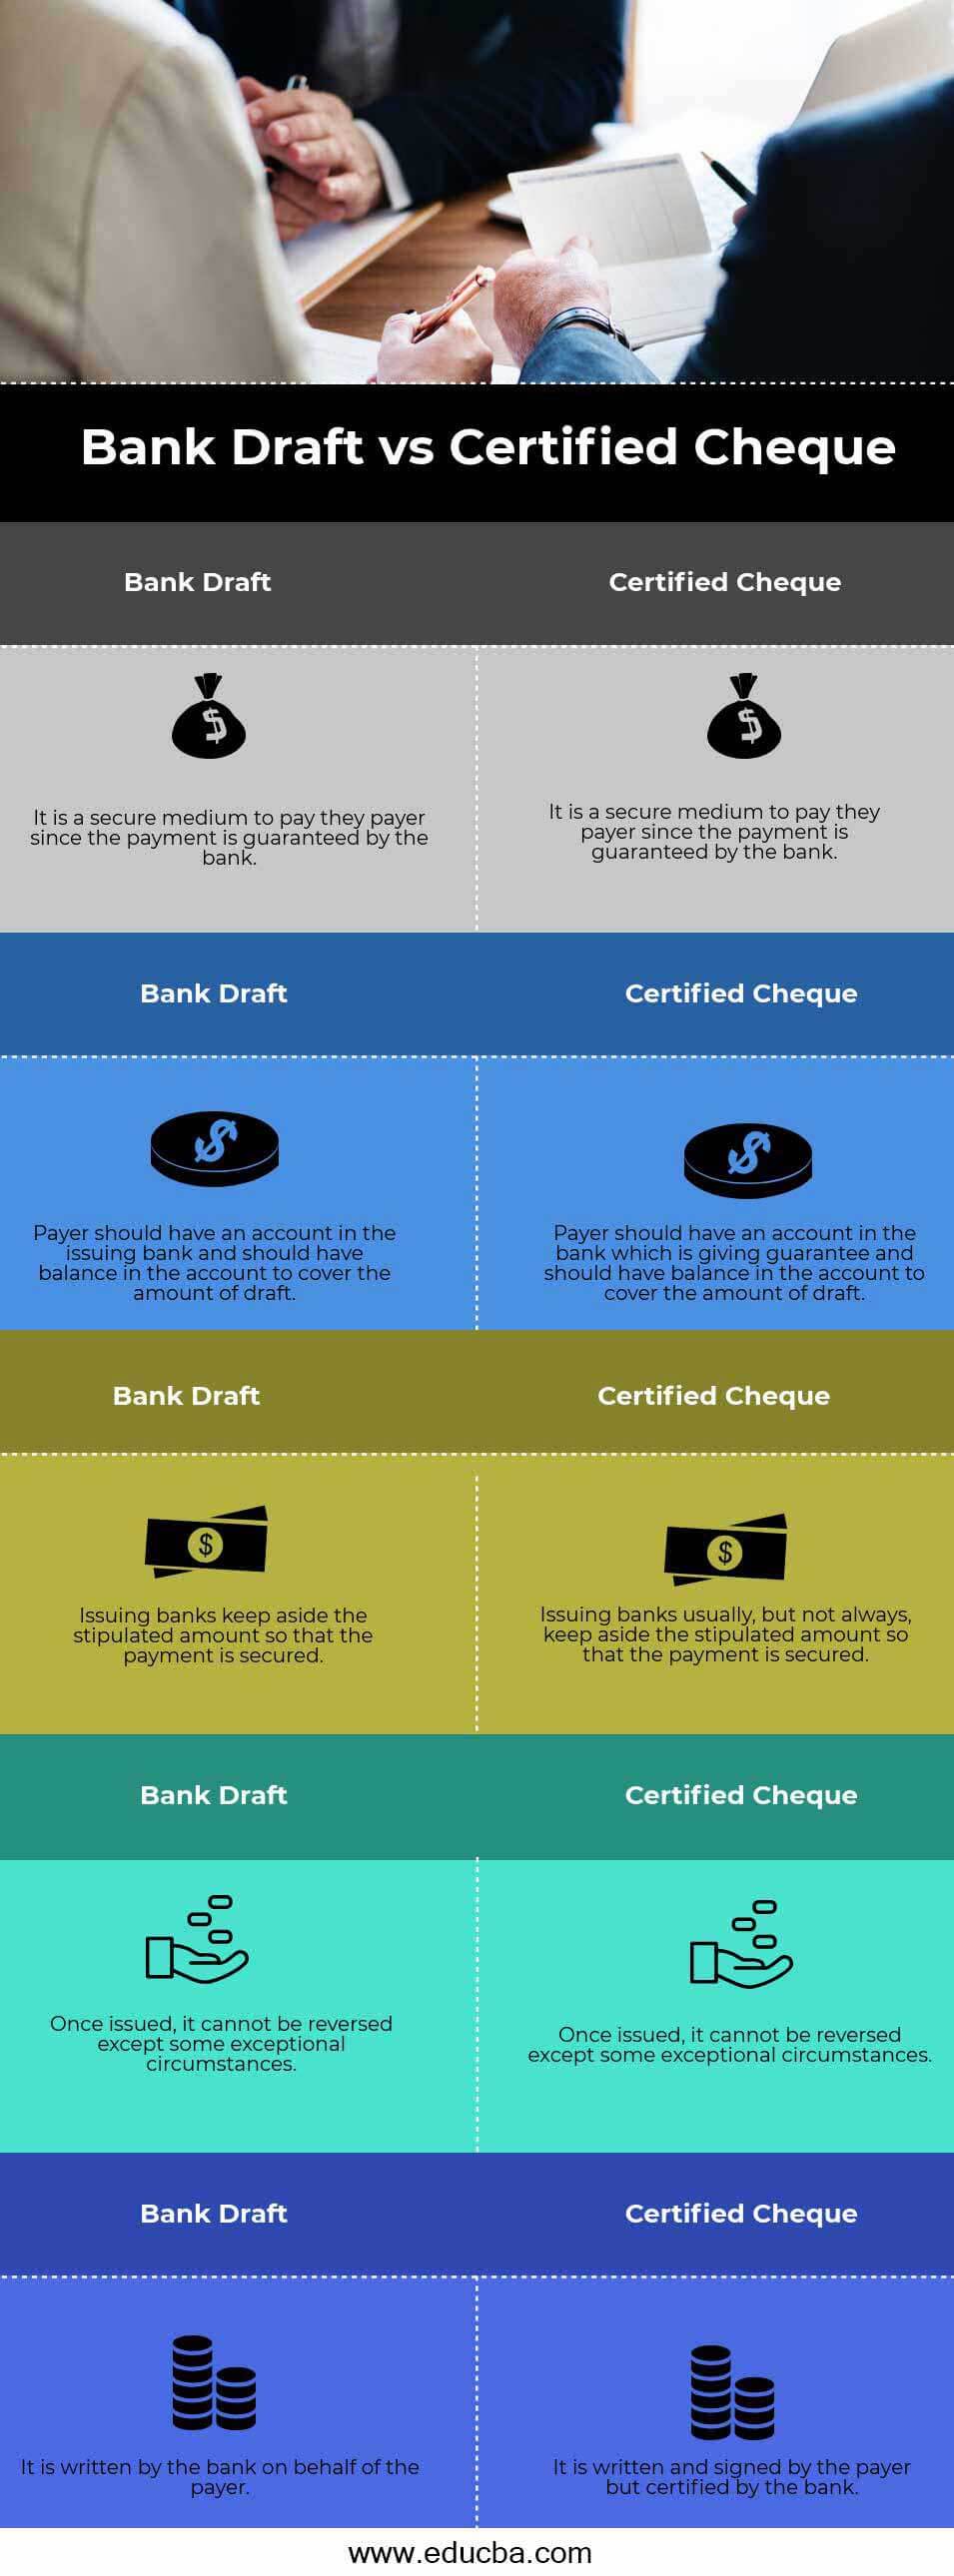 Cheque bancario versus cheque certificado